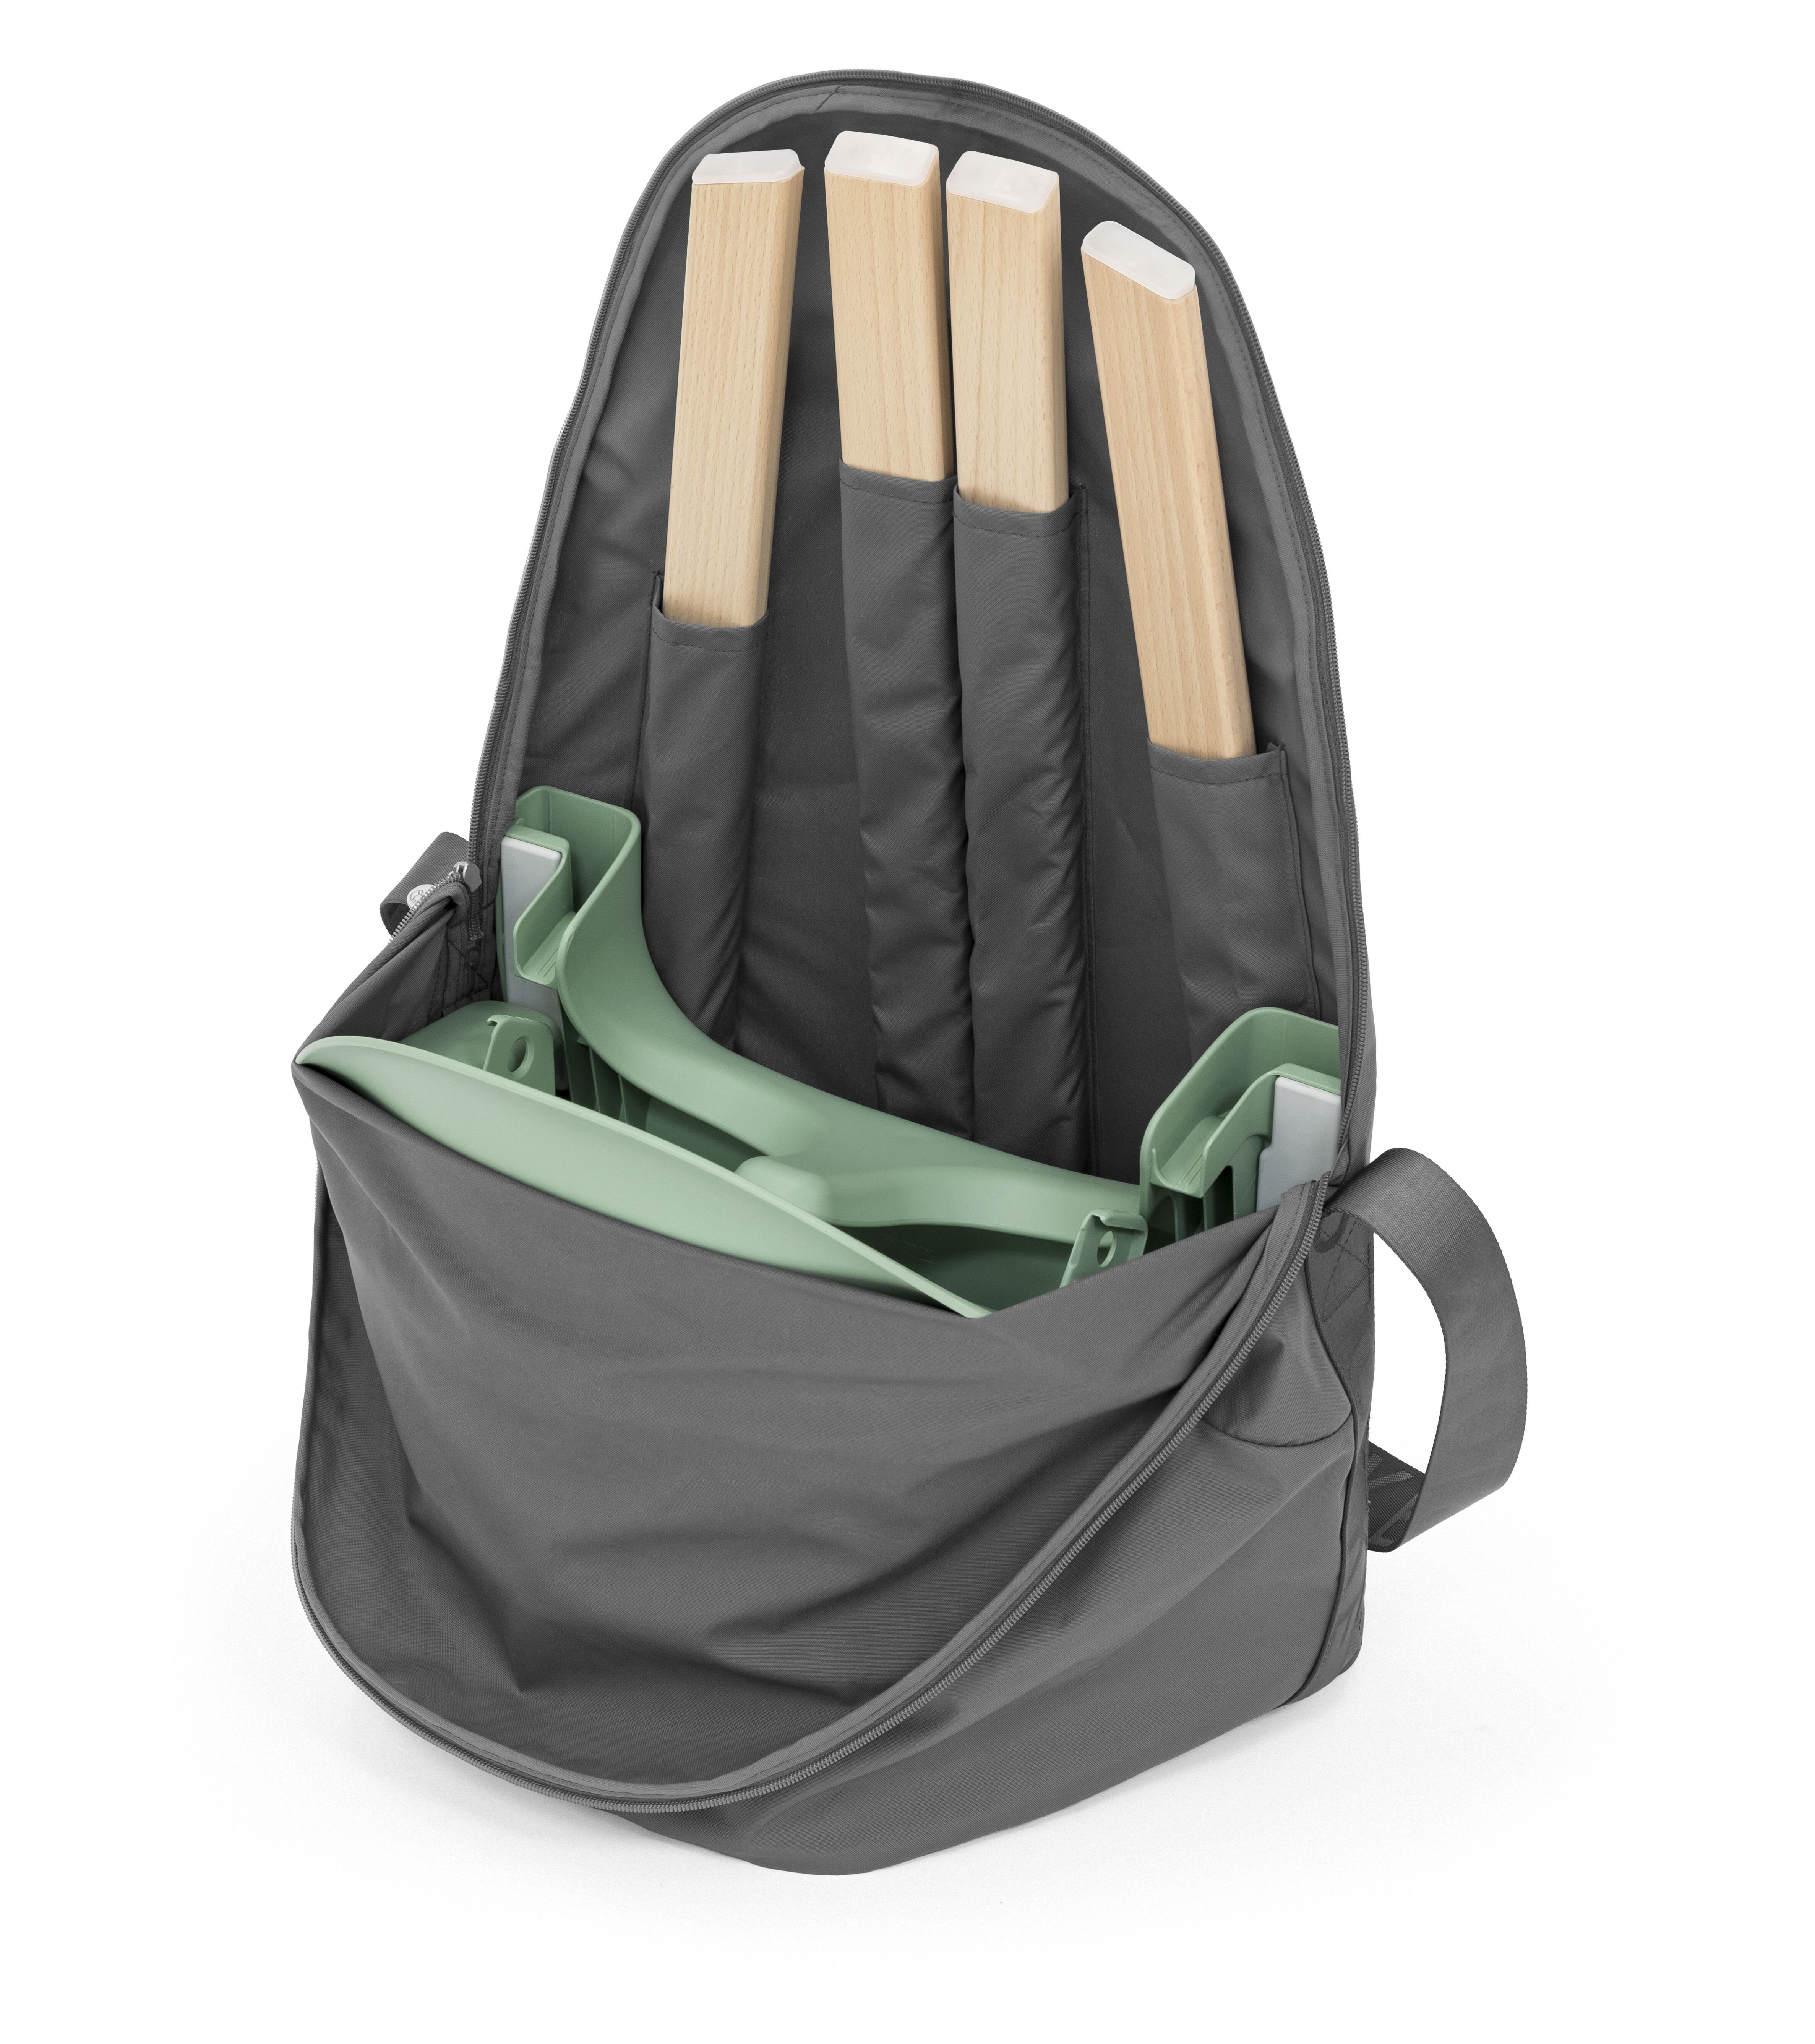 Clikk™ Travel Bag Hochstuhlauflage Stokke